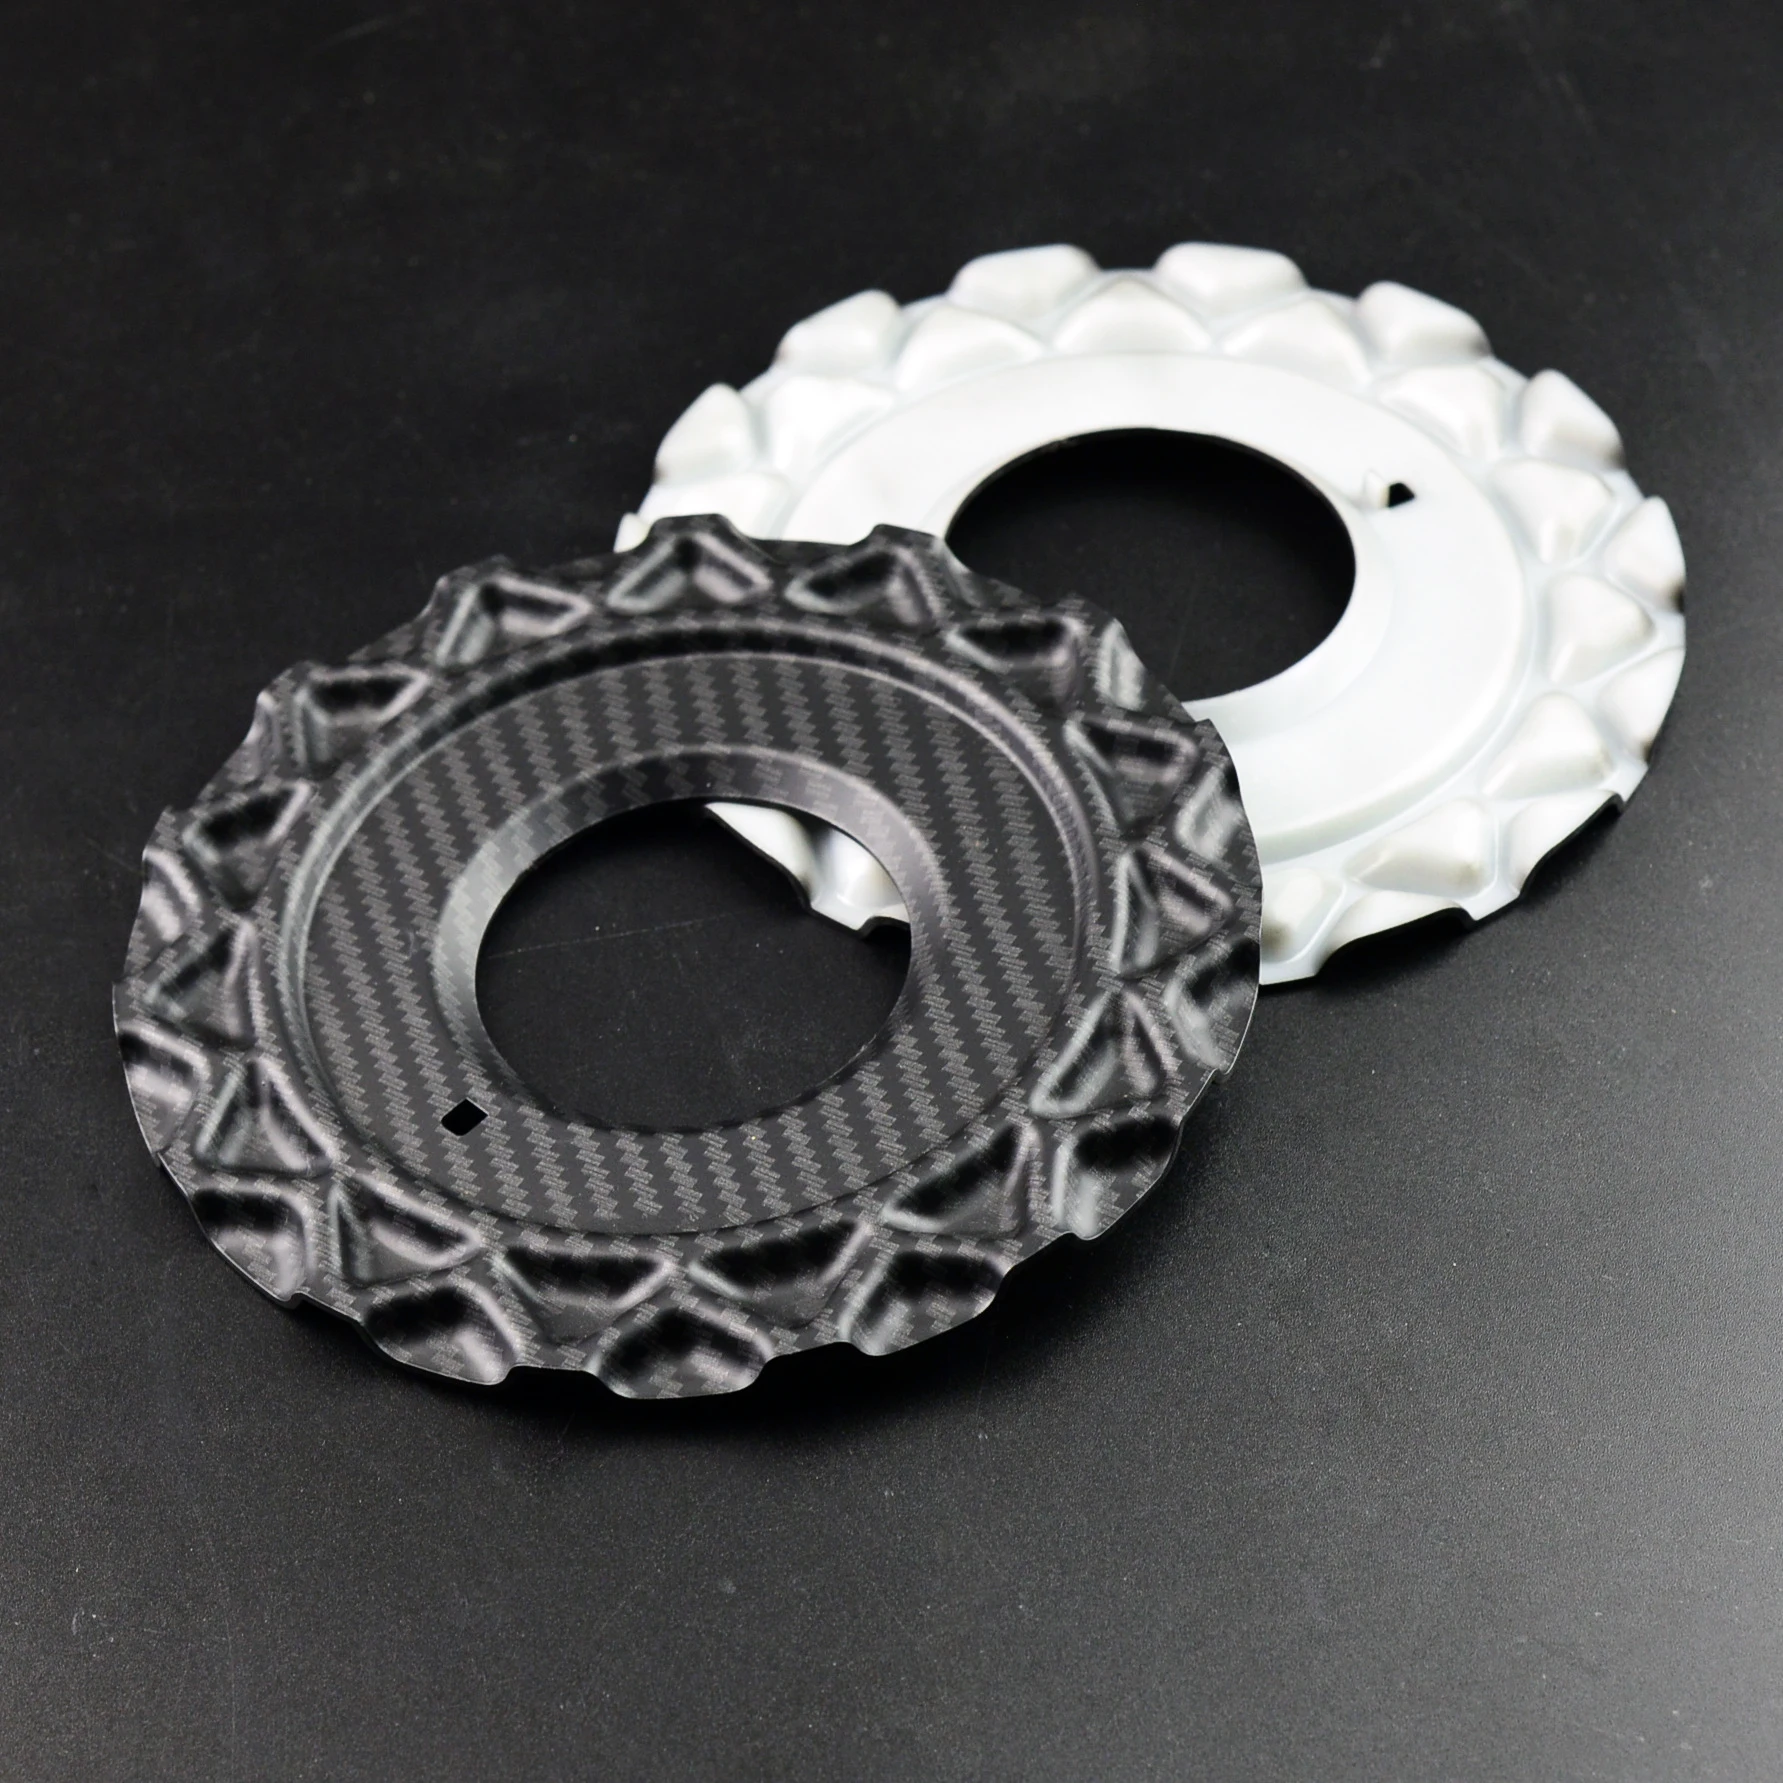 Кольцевые пластины. Кольцевая пластина. Кольцевая пластина диаметром 400 мм карбон. Колпачок для колец Shimano. Колпак для колец Shimano.